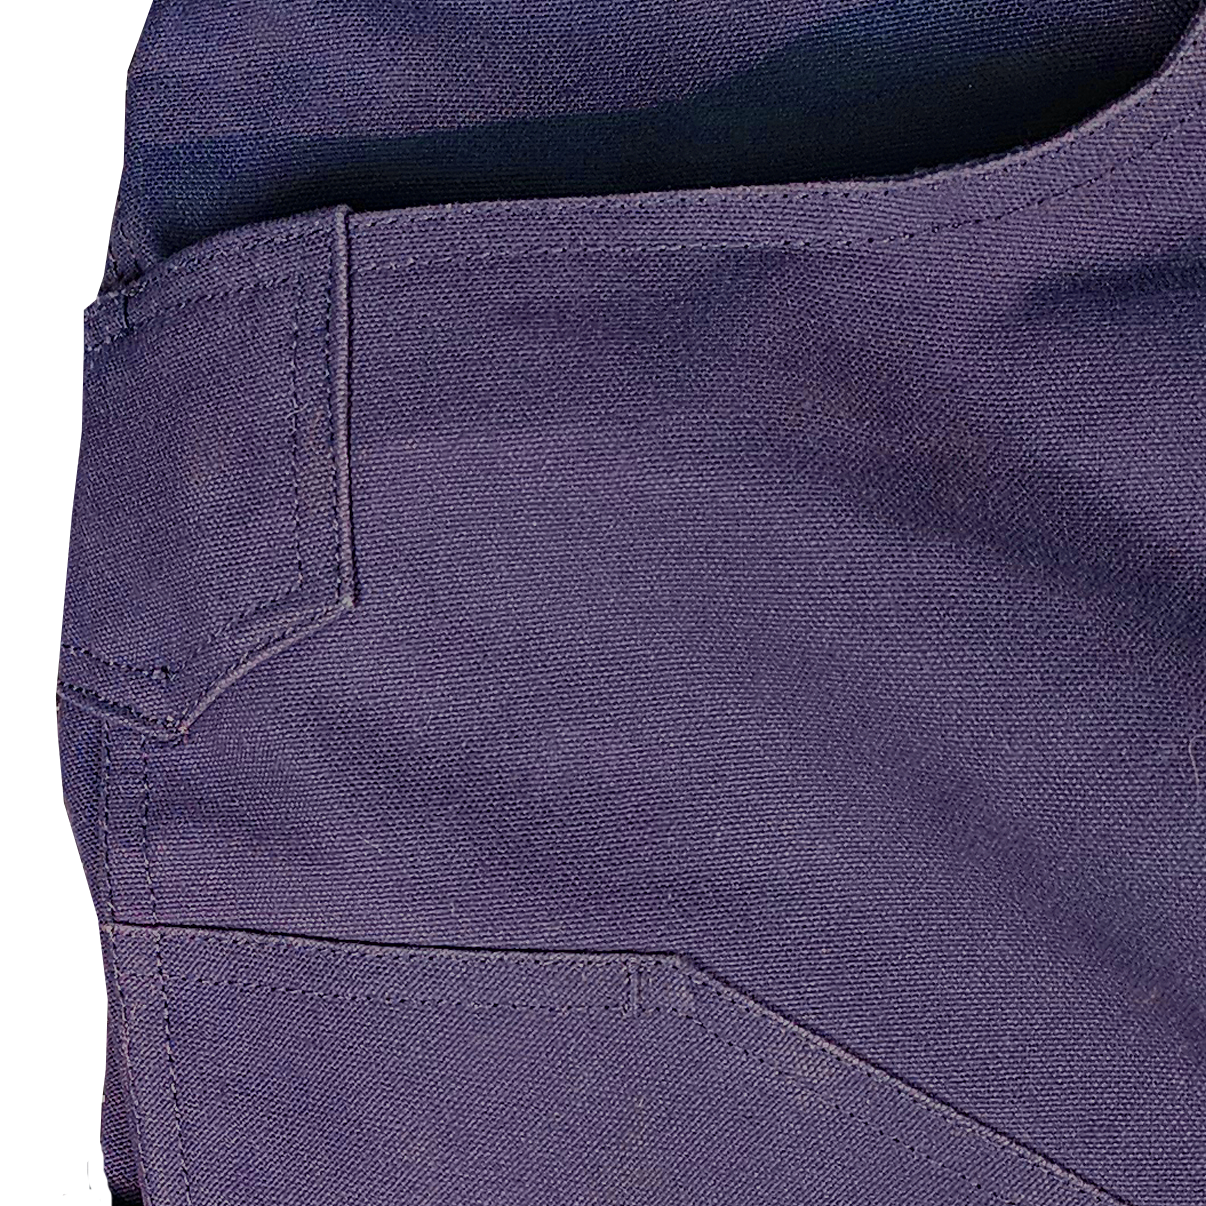 Pantaloni Knox Renegade Utility FR Premium - Blu navy